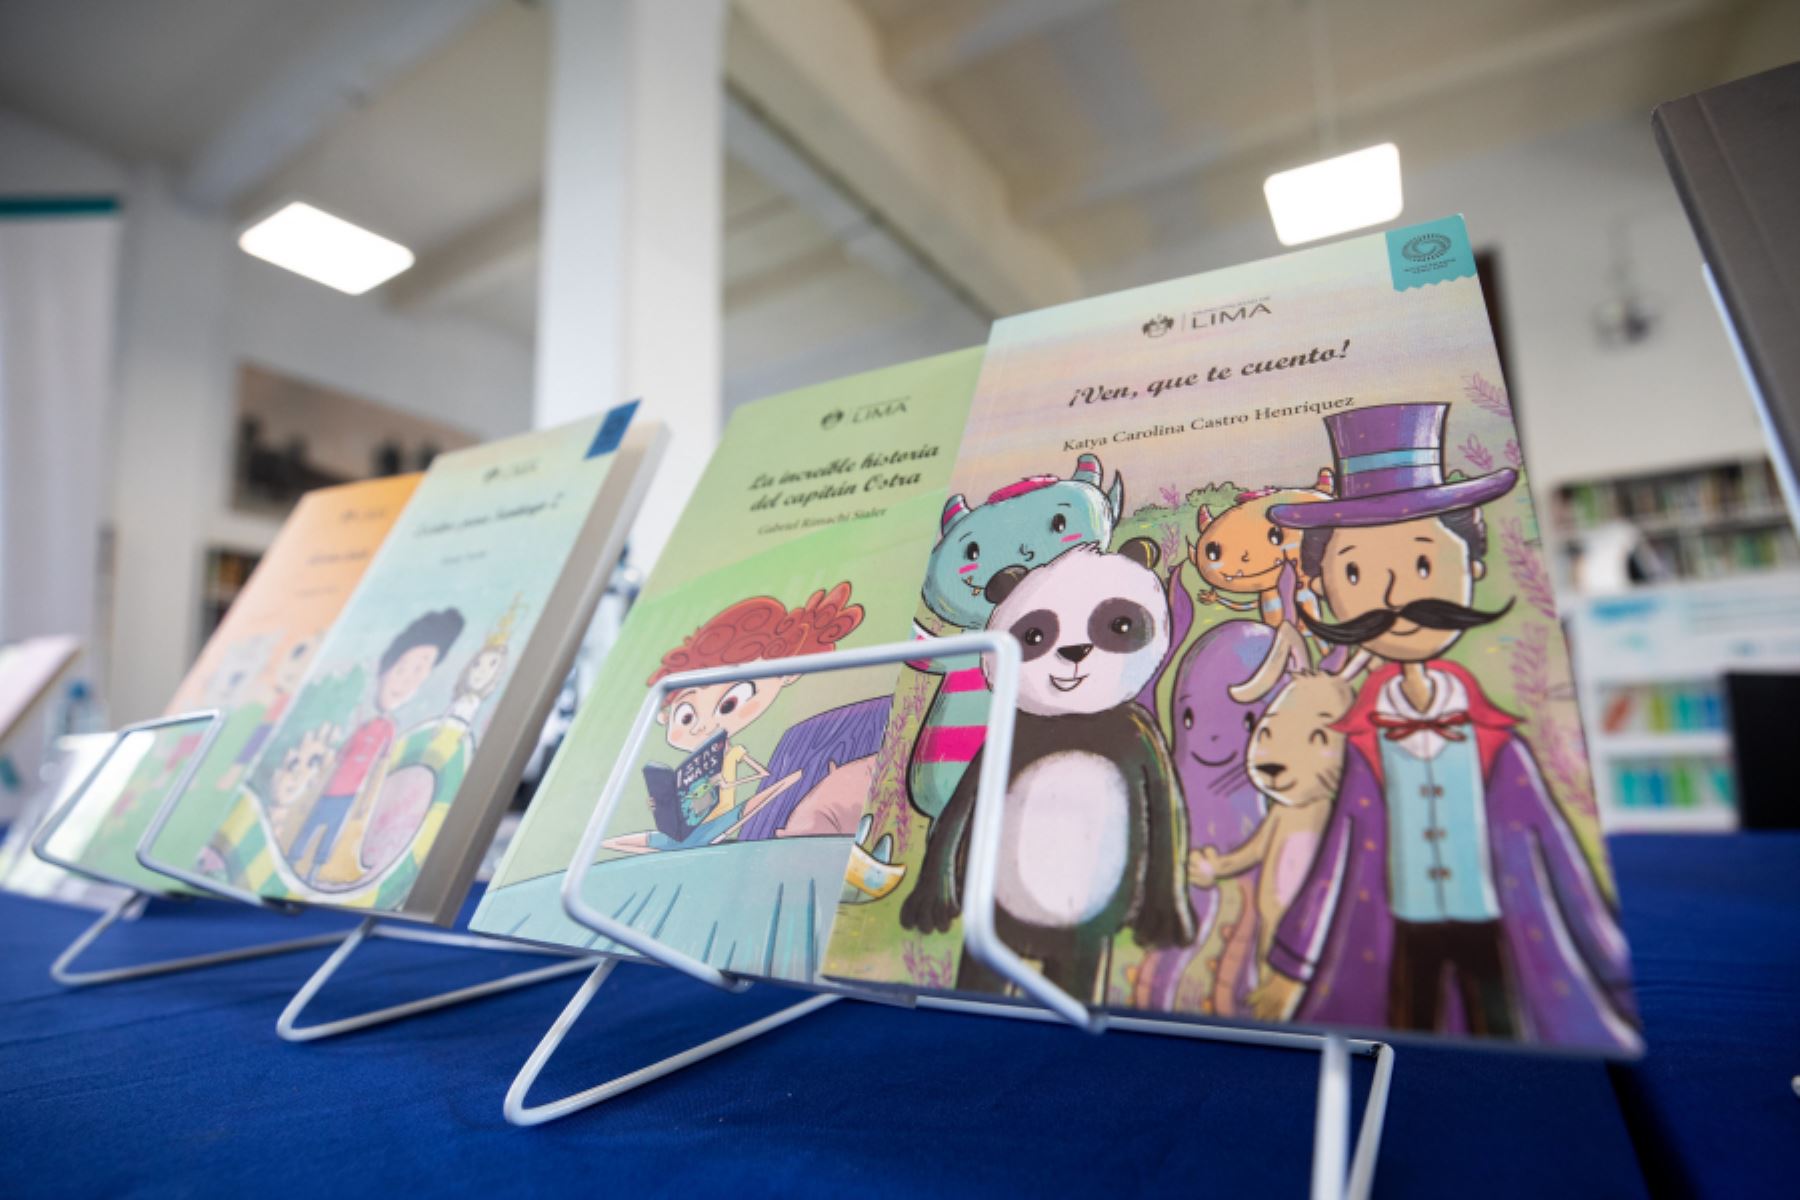 Municipalidad de Lima presenta nueva colección de libros para grandes y chicos. Foto: ANDINA/Difusión.